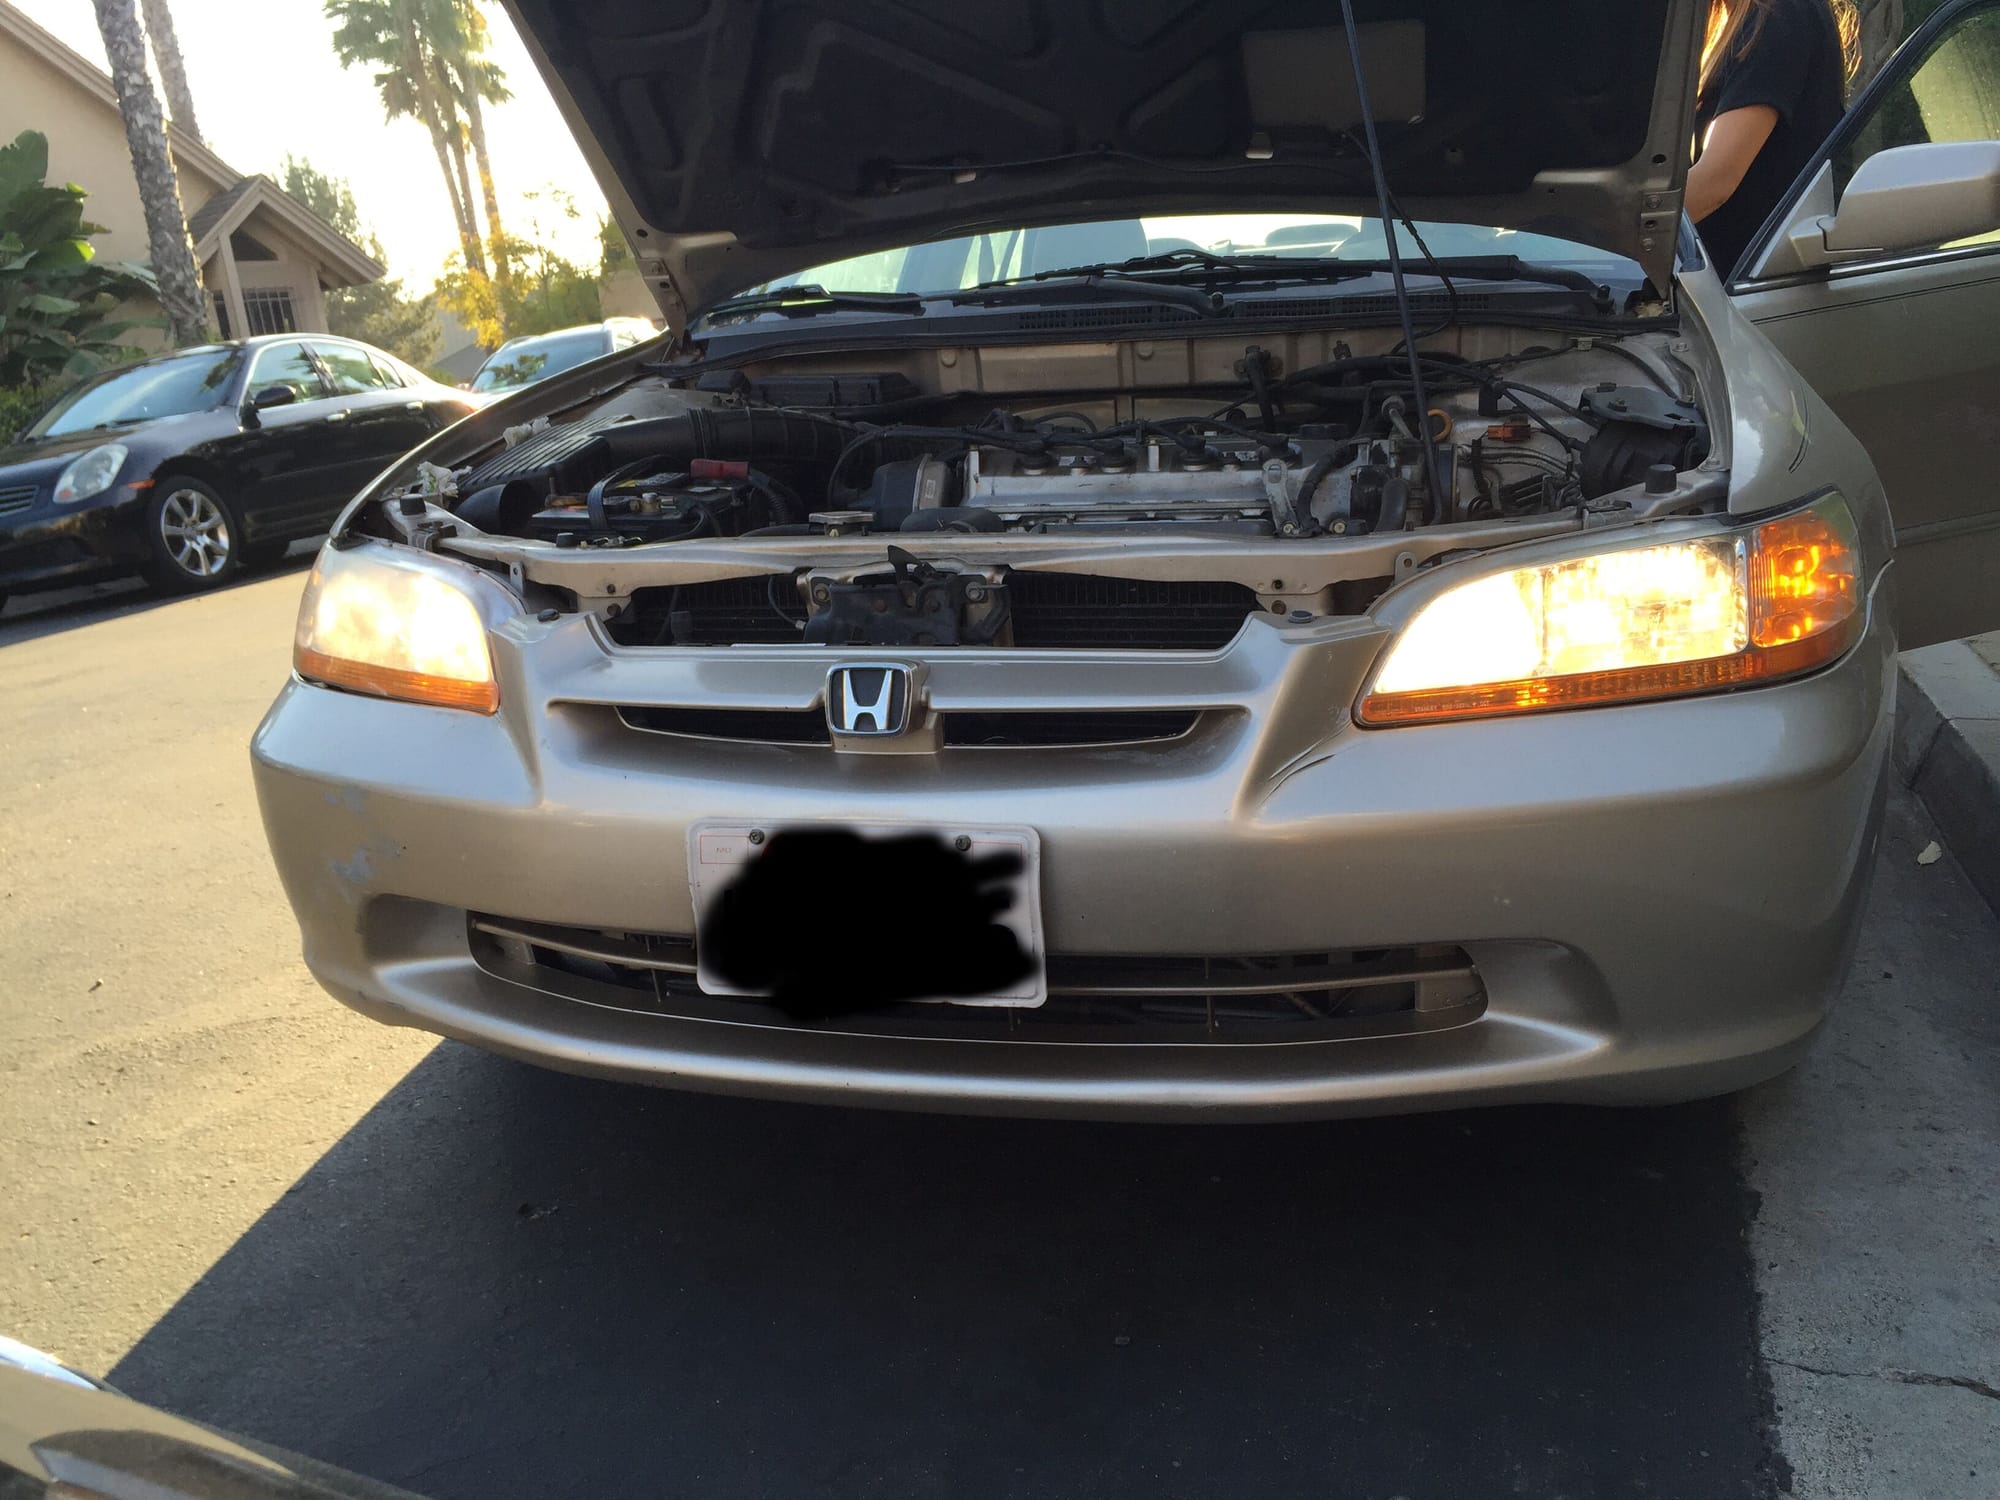 99 Honda accord headlights not working #1